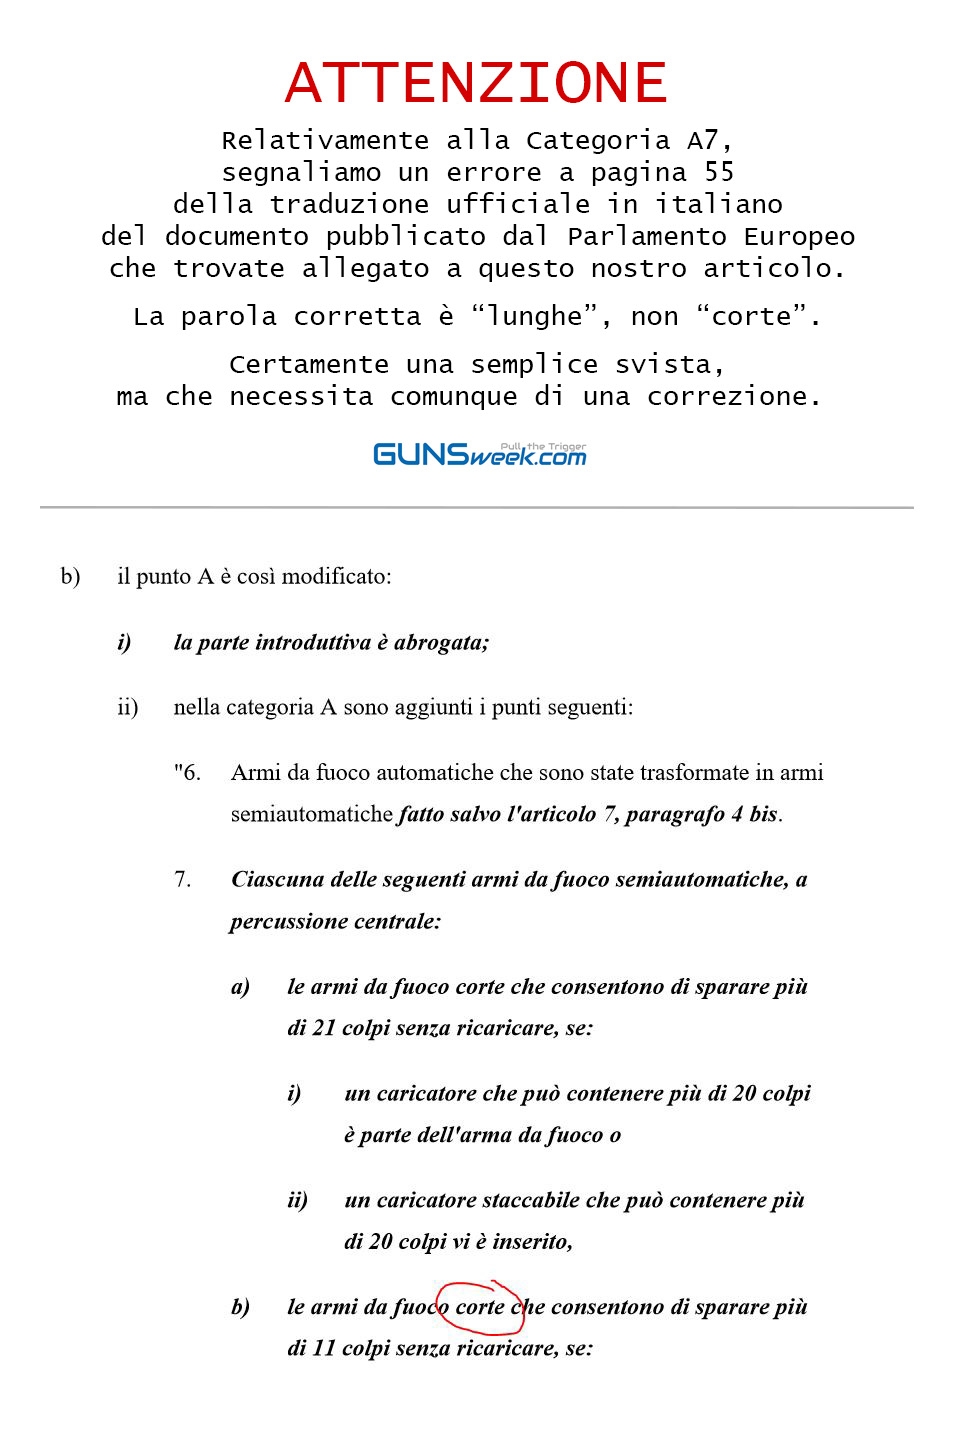 Segnaliamo errore nella traduzione italiana ufficiale del documento pubblicato dal Parlamento Europeo